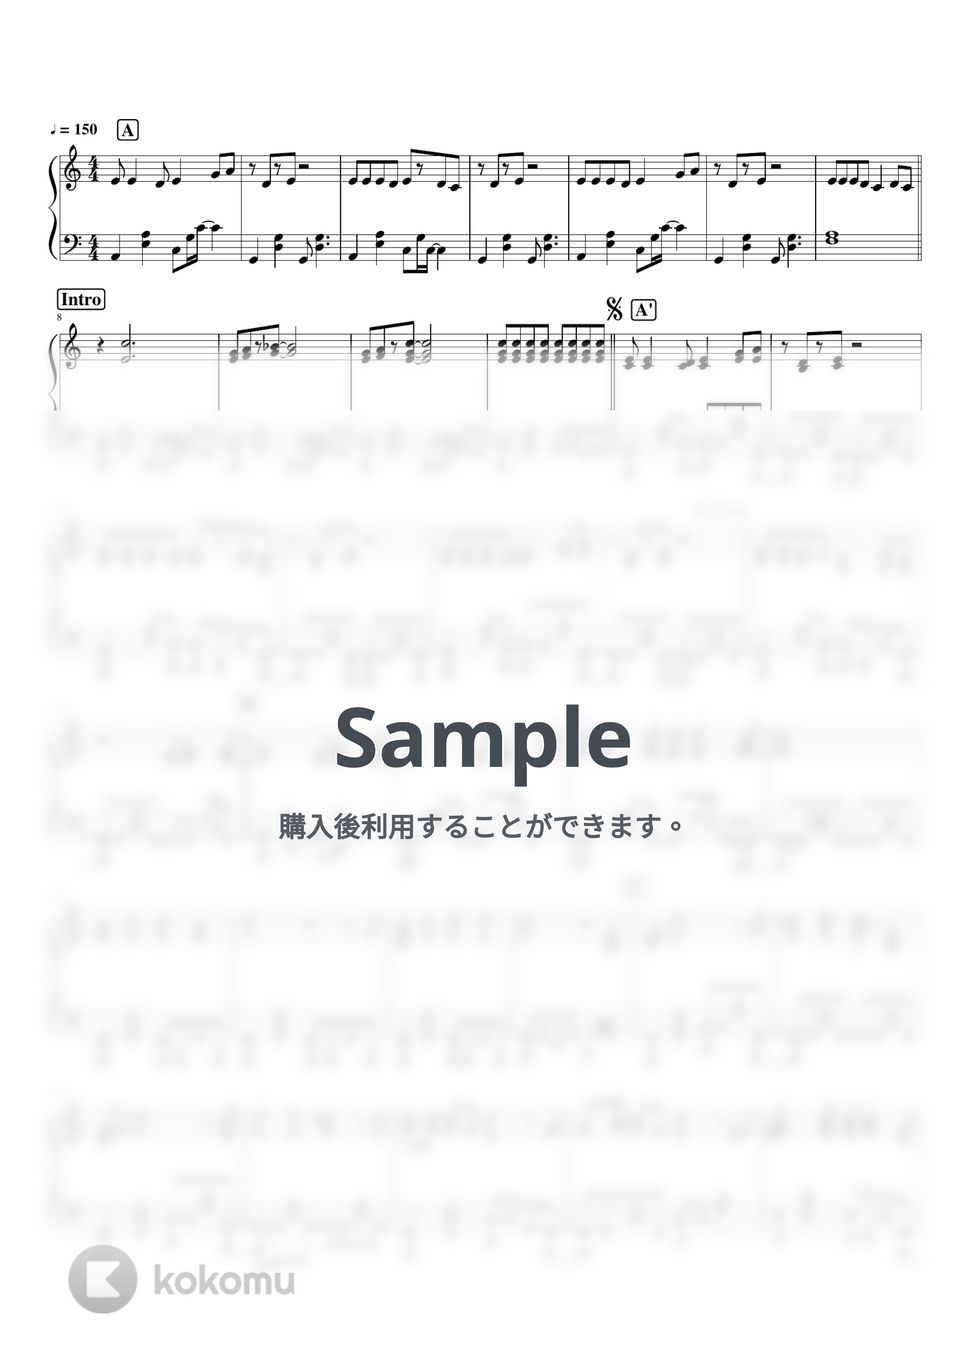 リーガルリリー - 風にとどけ by pianomikan